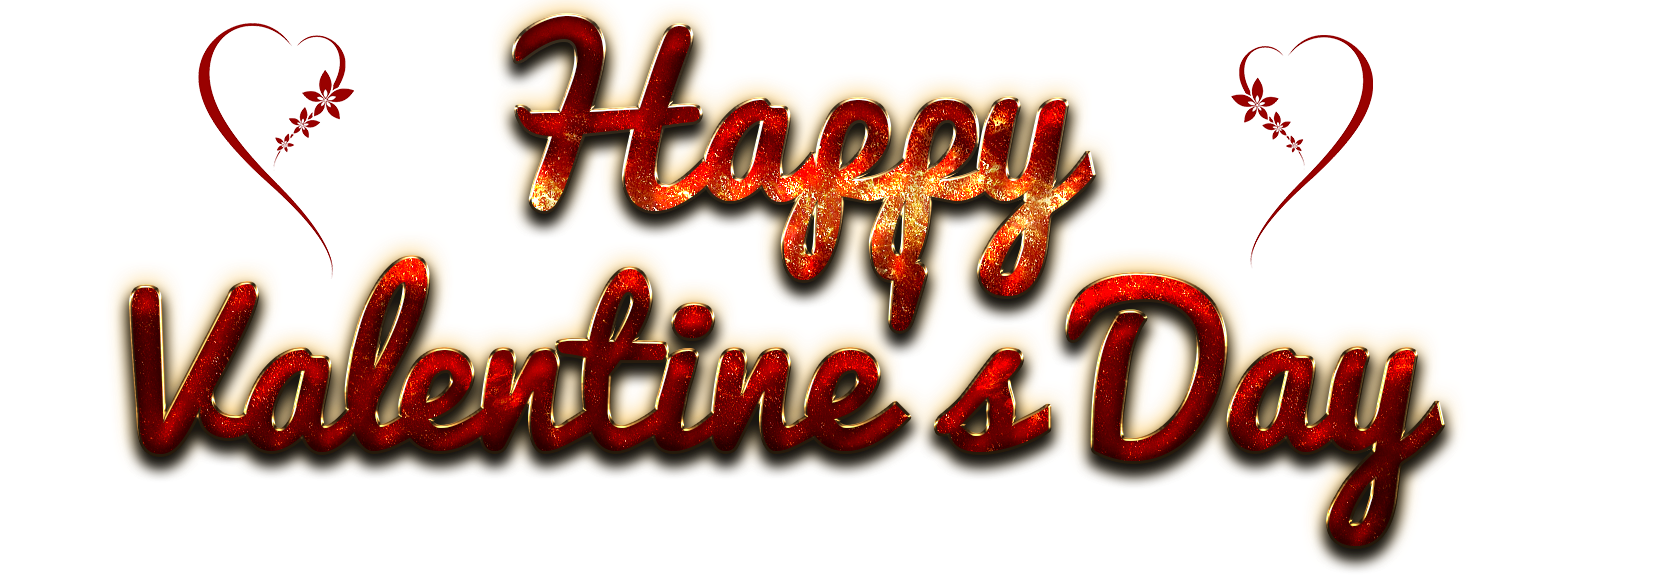 Happy Saint Valentin Jour PNG Image